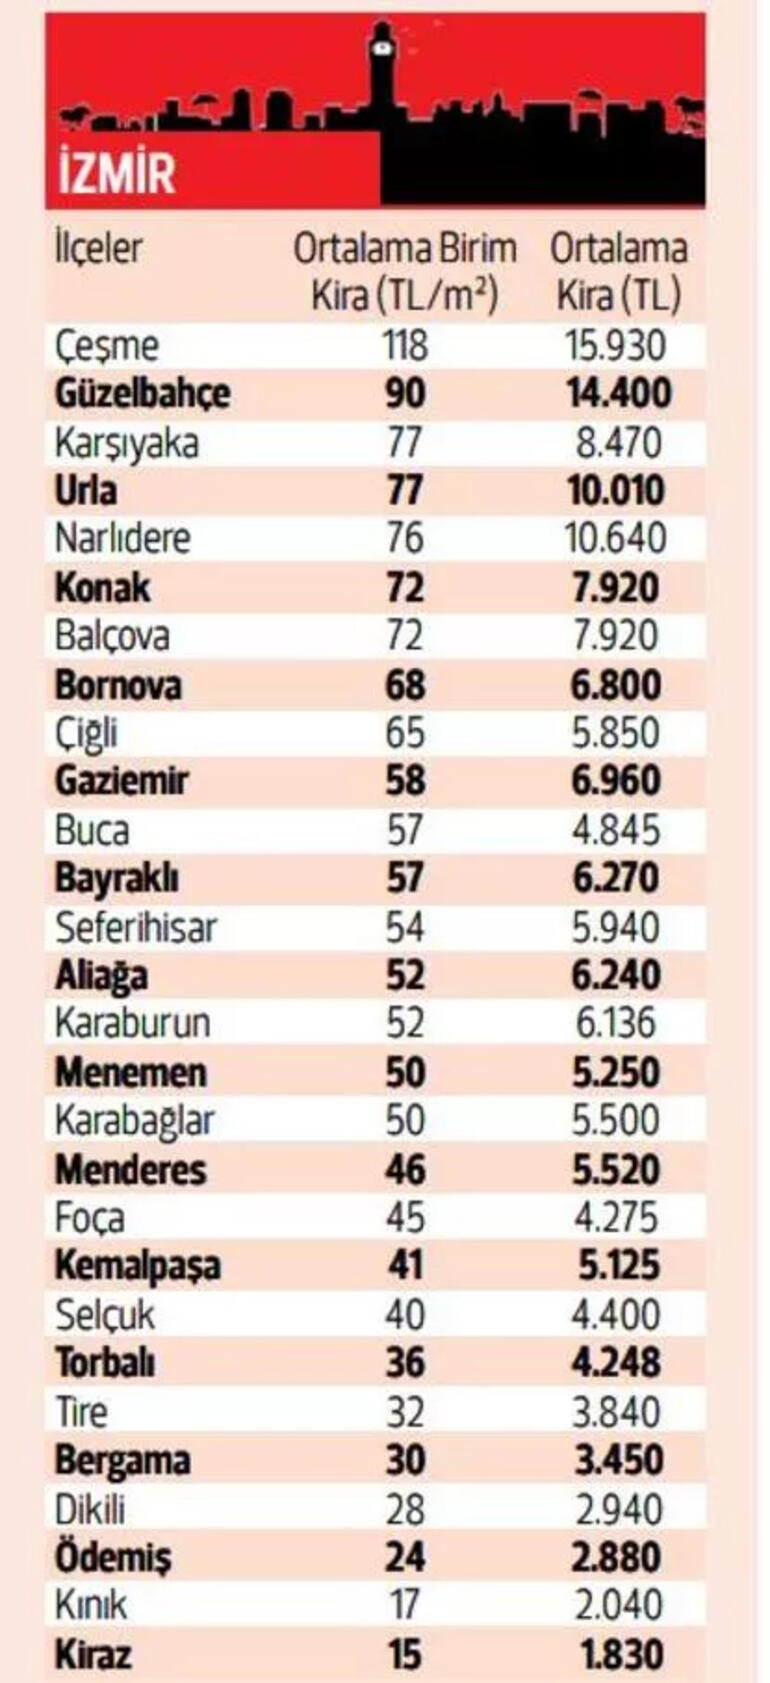 زادت الإيجارات بنسبة 320 في المائة ولا توجد منازل أقل من 5 آلاف ليرة تركية